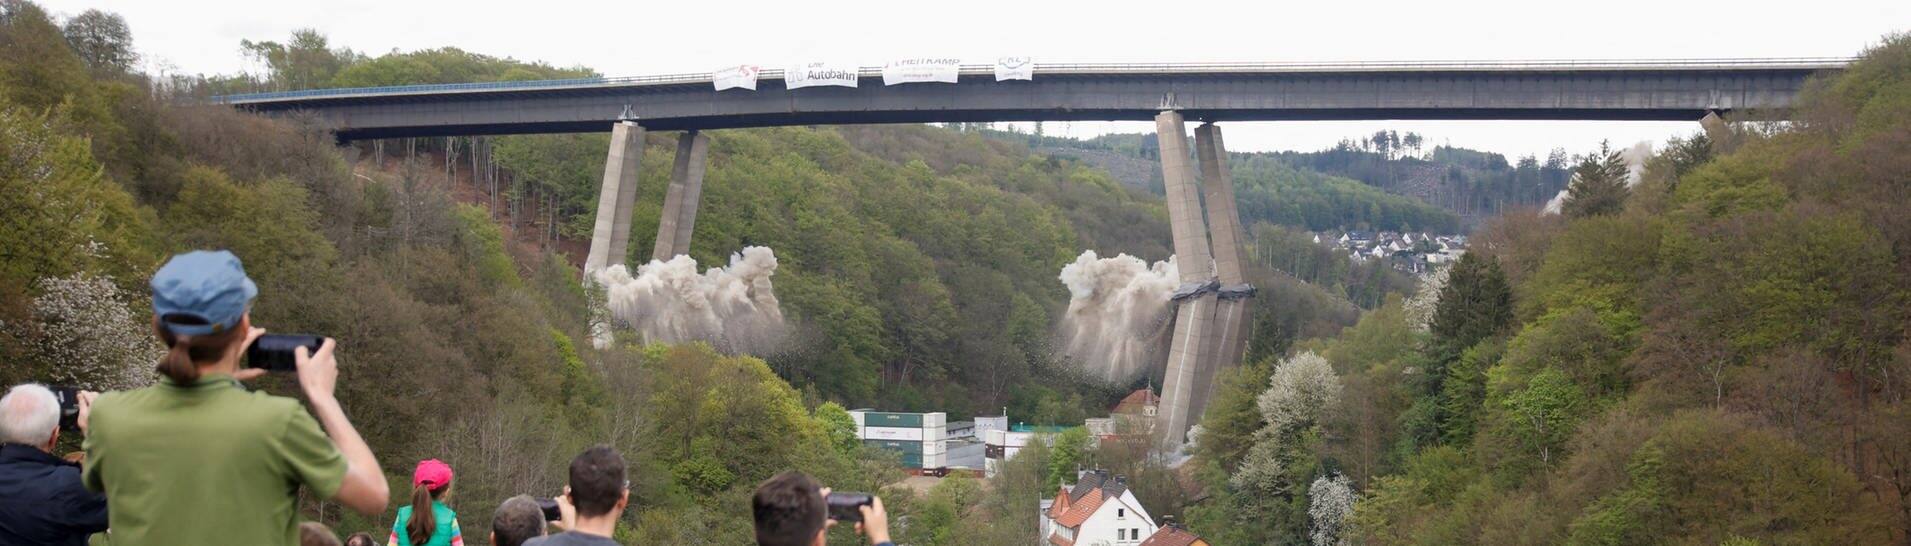 Menschen schauen aus der Ferne zu, wie die marode Rahmedetalbrücke bei Lüdenscheid gesprengt wird (Foto: Reuters, REUTERS/Leon Kuegeler)